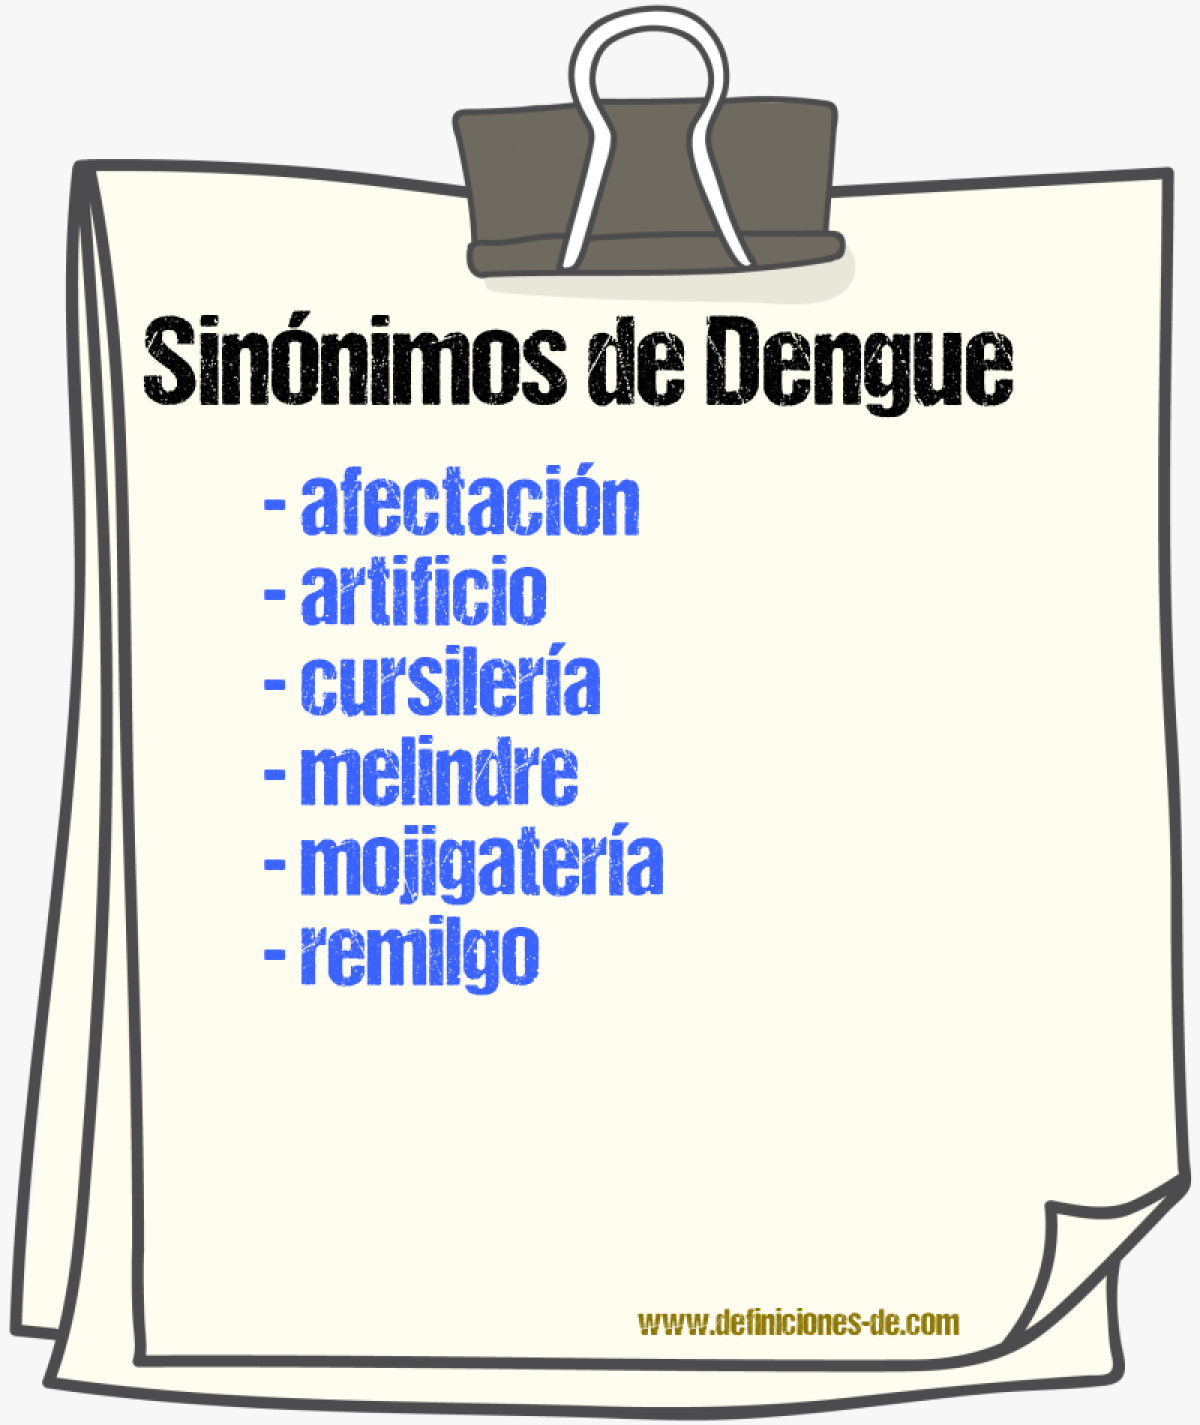 Sinnimos de dengue